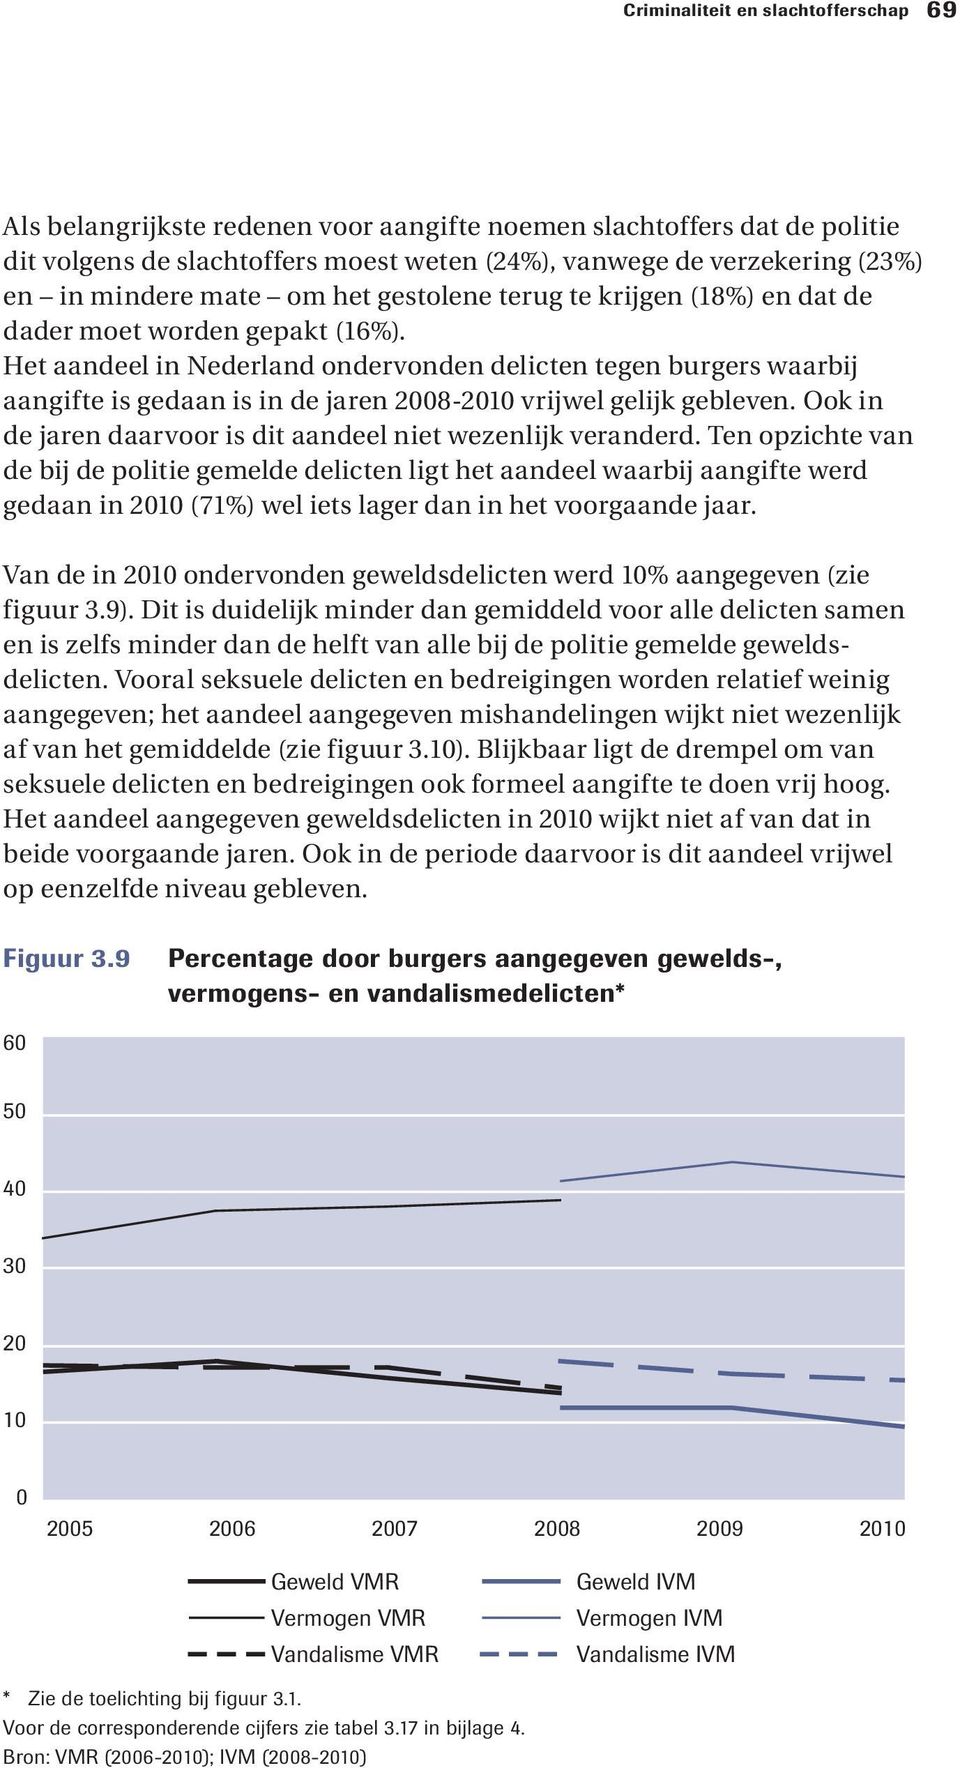 Het aandeel in Nederland ondervonden delicten tegen burgers waarbij aangifte is gedaan is in de jaren 2008-2010 vrijwel gelijk gebleven.